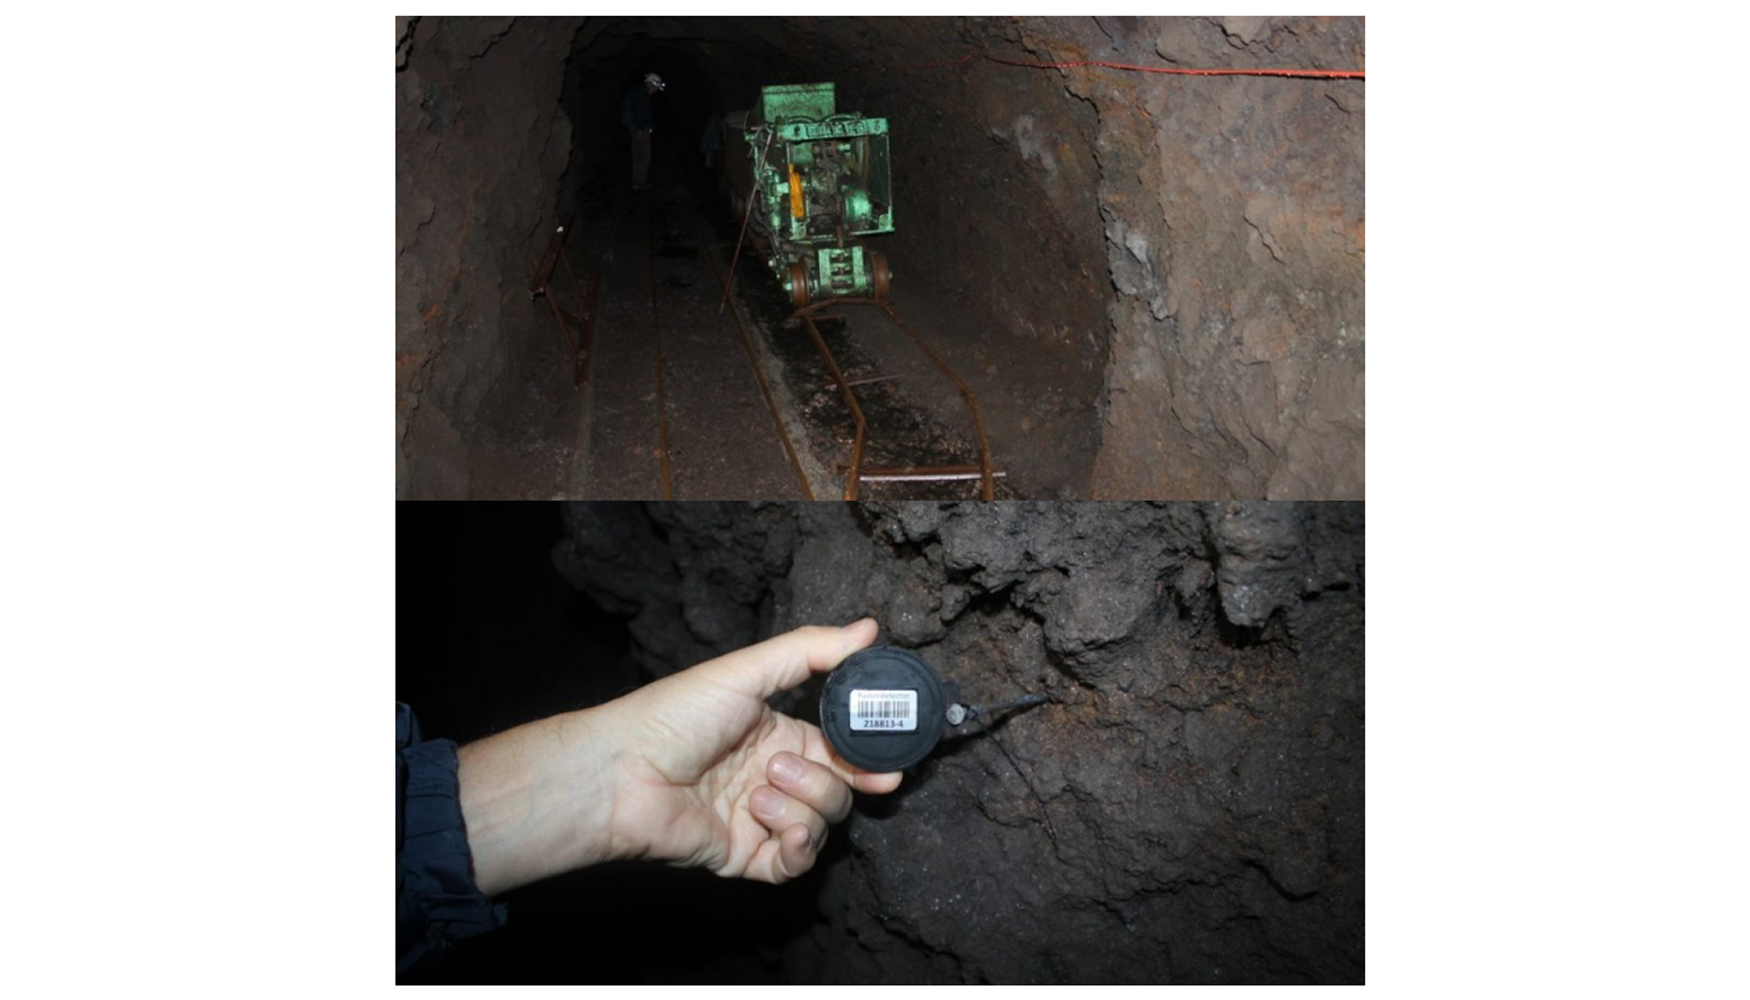 Figura 5. Seccin de una galera (mina de agua) y colocacin de detector pasivo. Fuente: Juan Carlos Santamarta